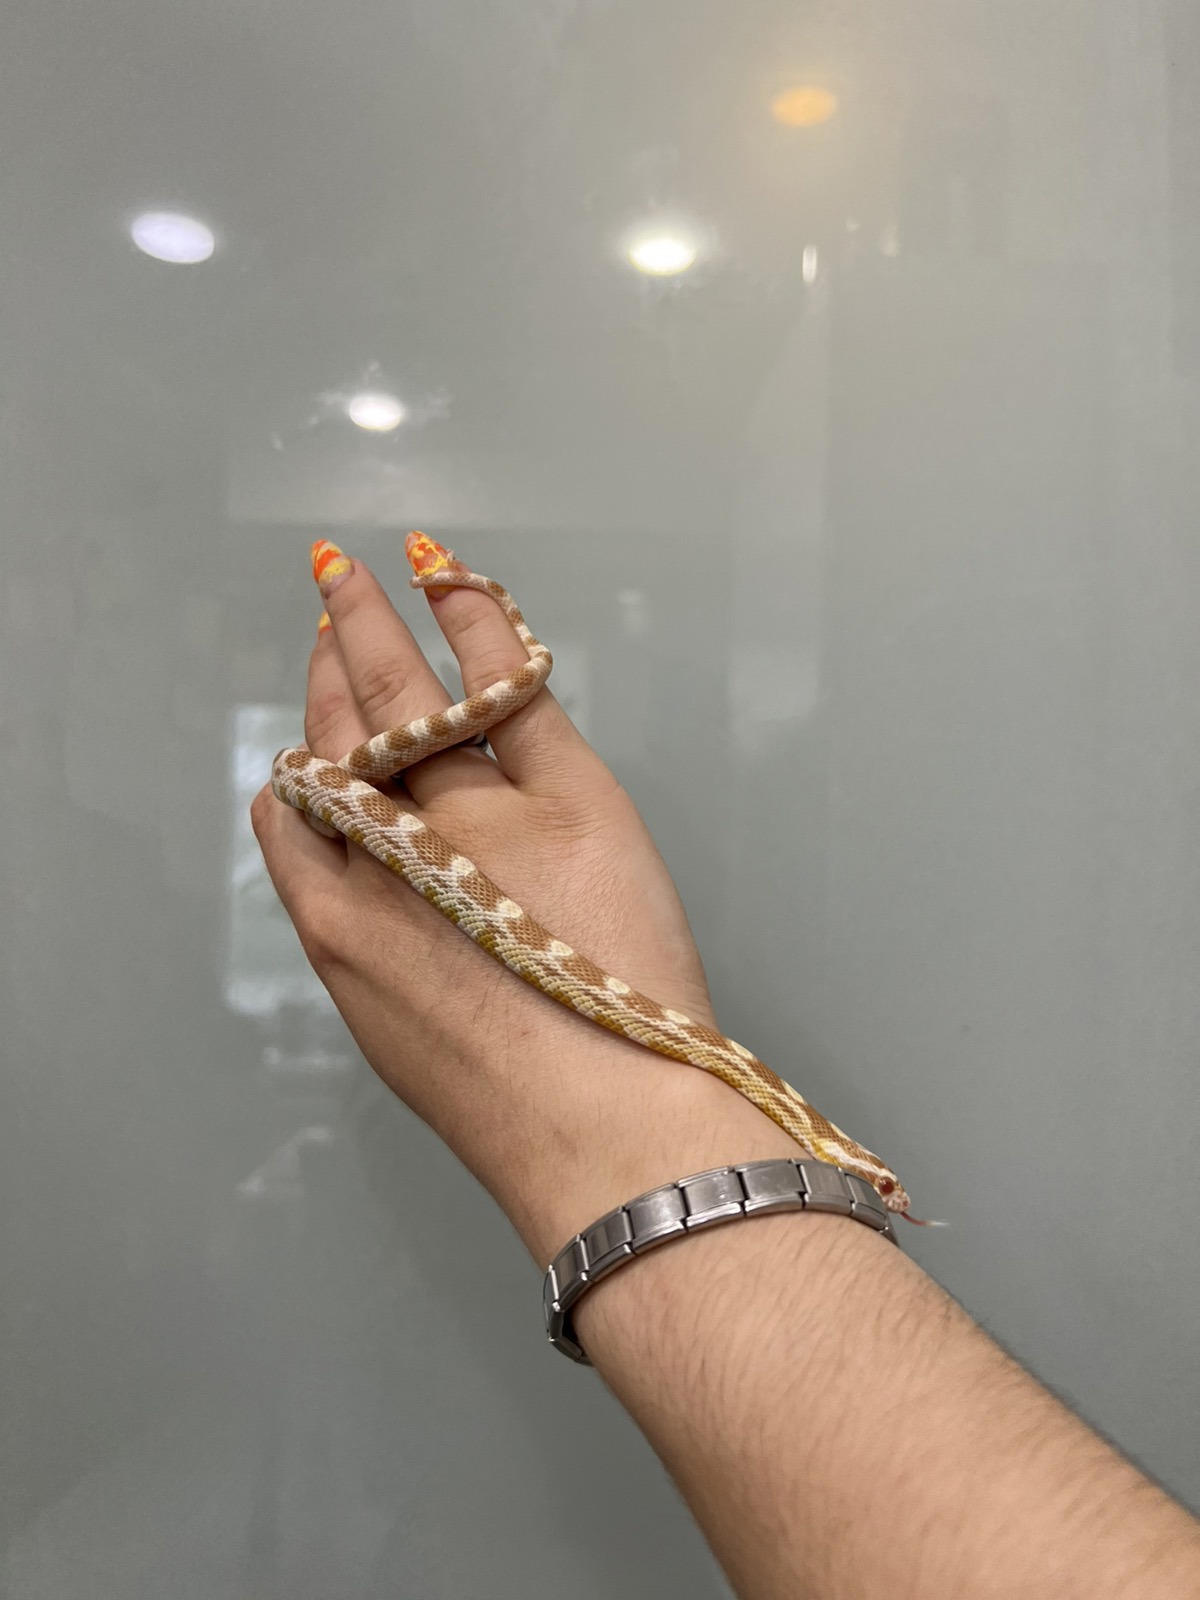 Змійка маїсовий полоз морфи Баттер біля 50 см